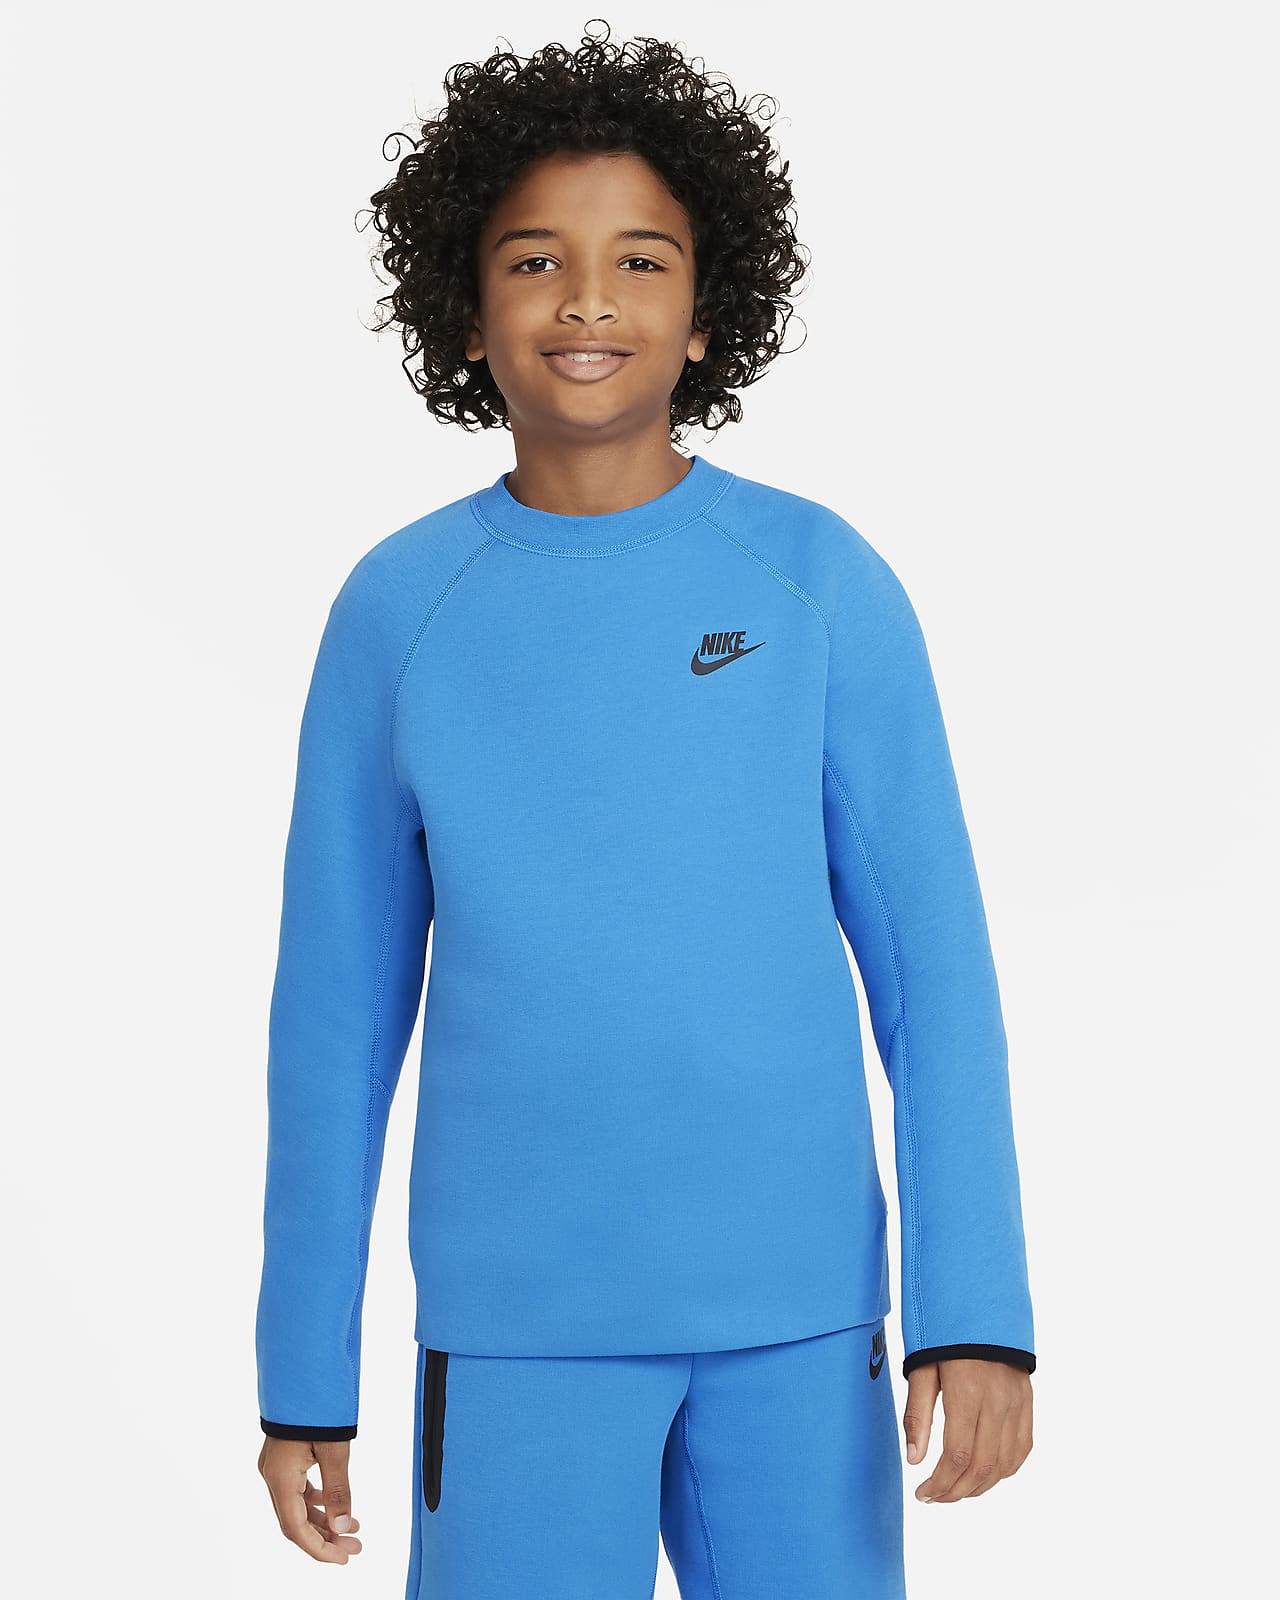 Sweatshirt Nike Sportswear Tech Fleece Júnior (Rapaz)